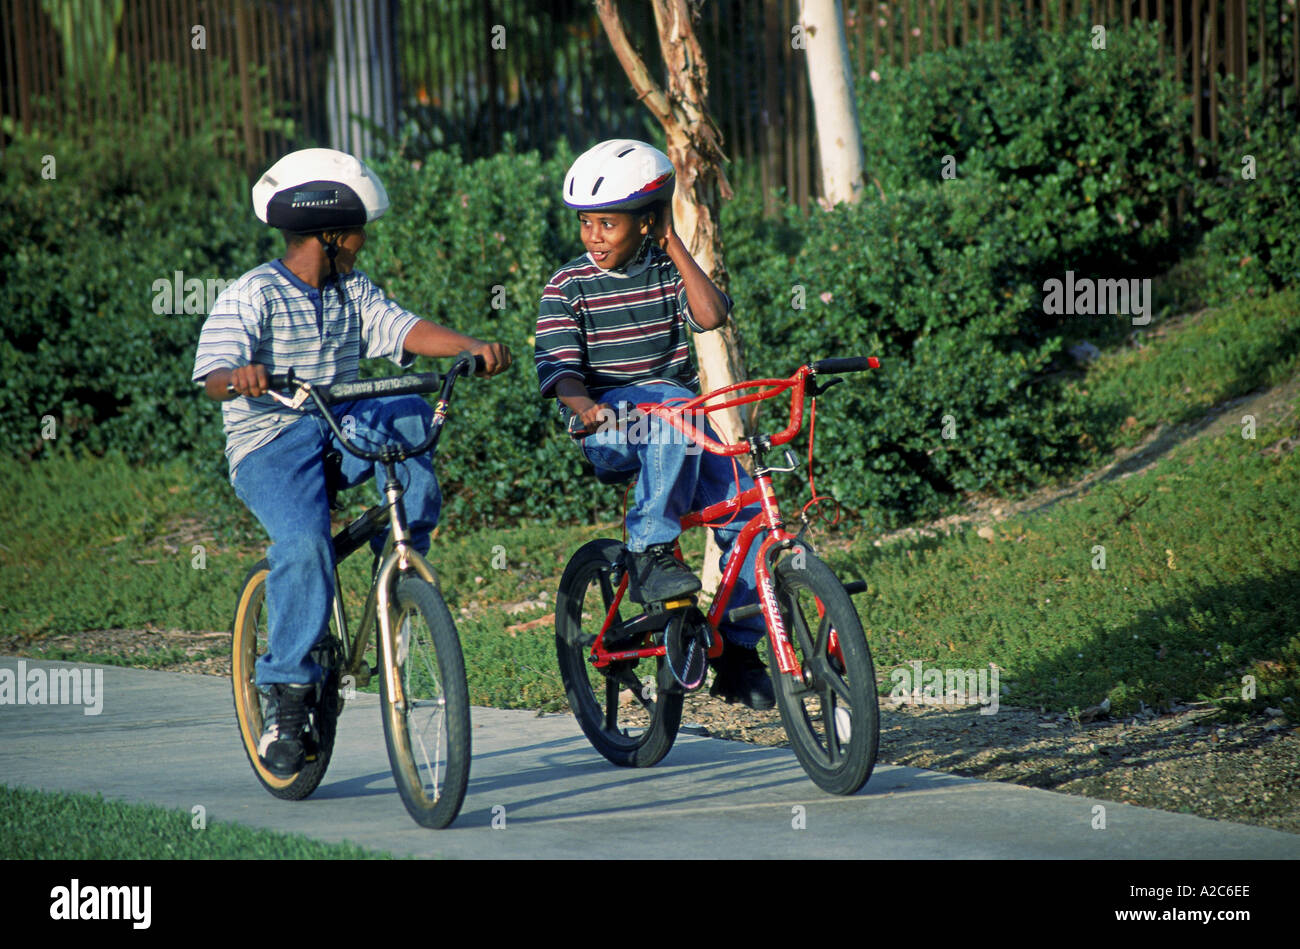 Kinder Kind Fahrrad fahren Fahrrad Fahrrad Multi ethnische Vielfalt  multikulturellen Kultur zwei s jungen 8-10 Jahre Jahre alt Sicherheit USA  Stockfotografie - Alamy